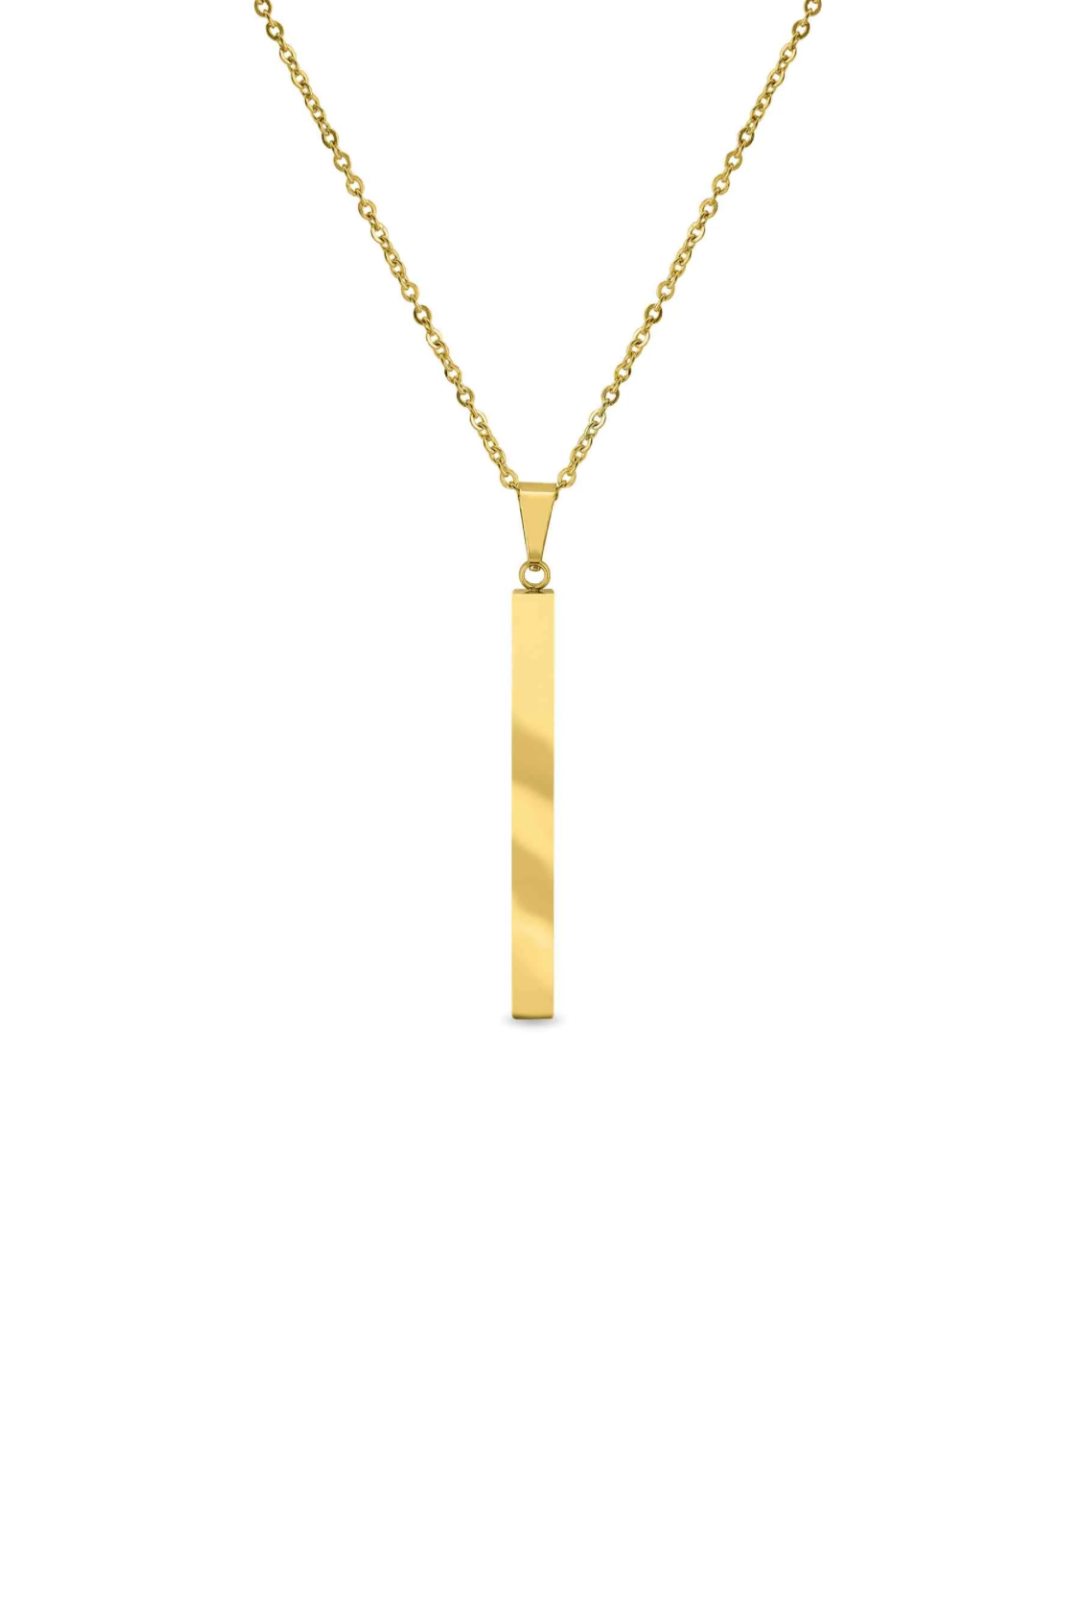 Gold Bar Necklace - Engravable